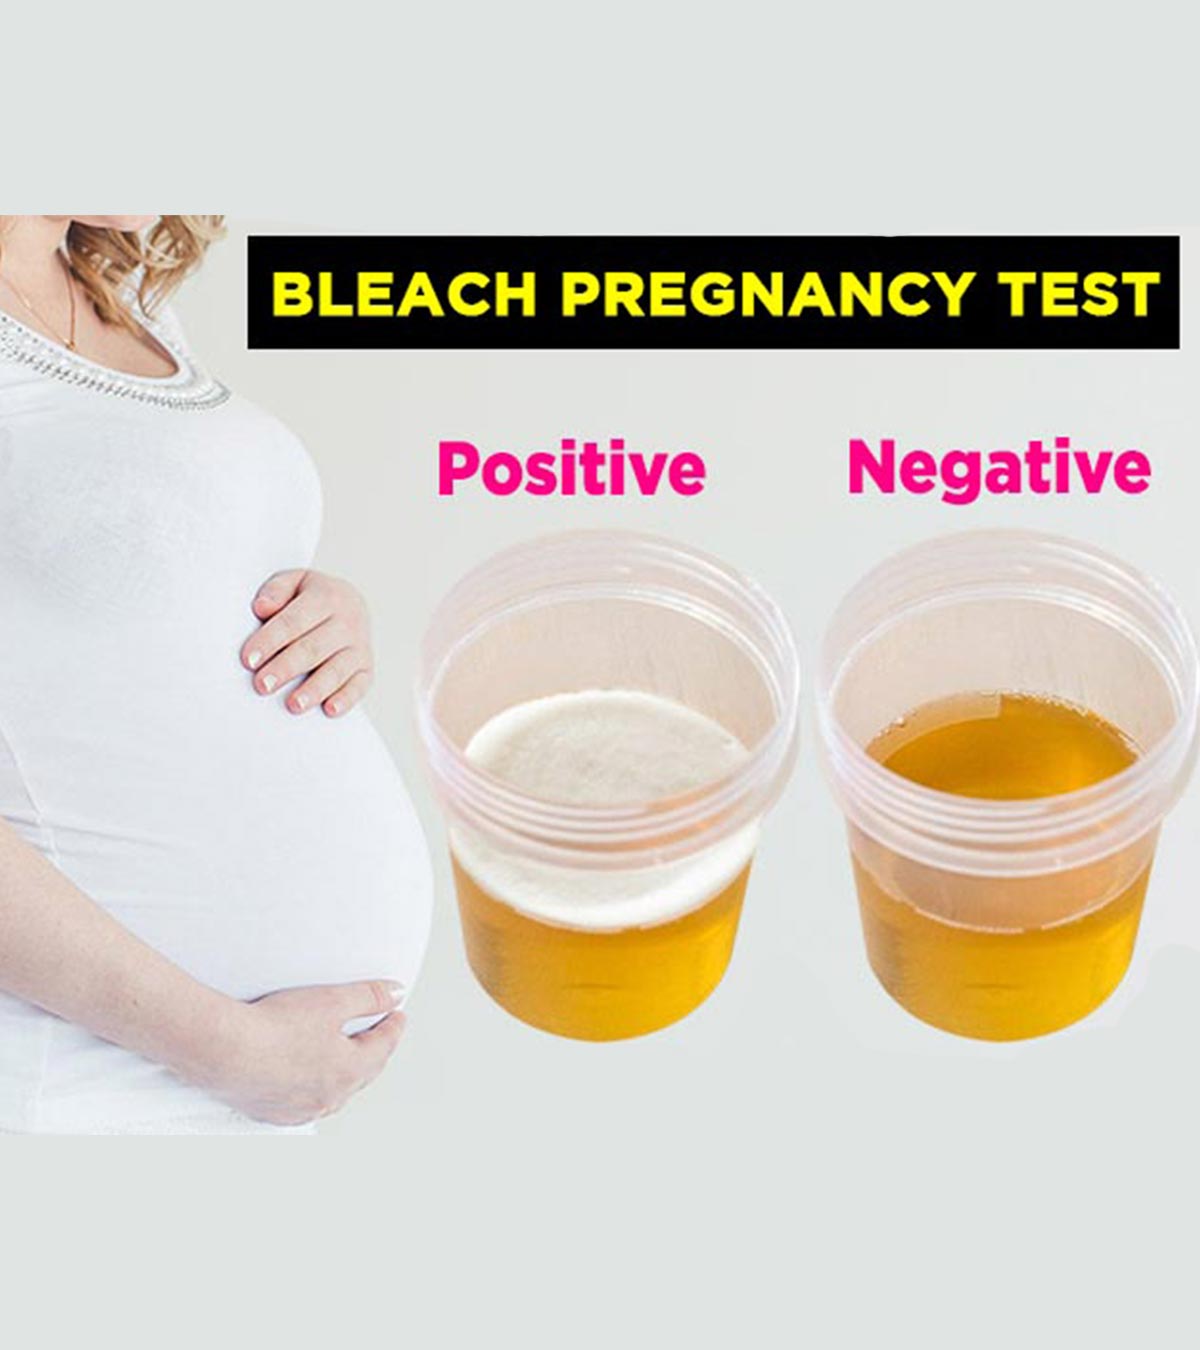 漂白剂妊娠试验准确可靠吗?